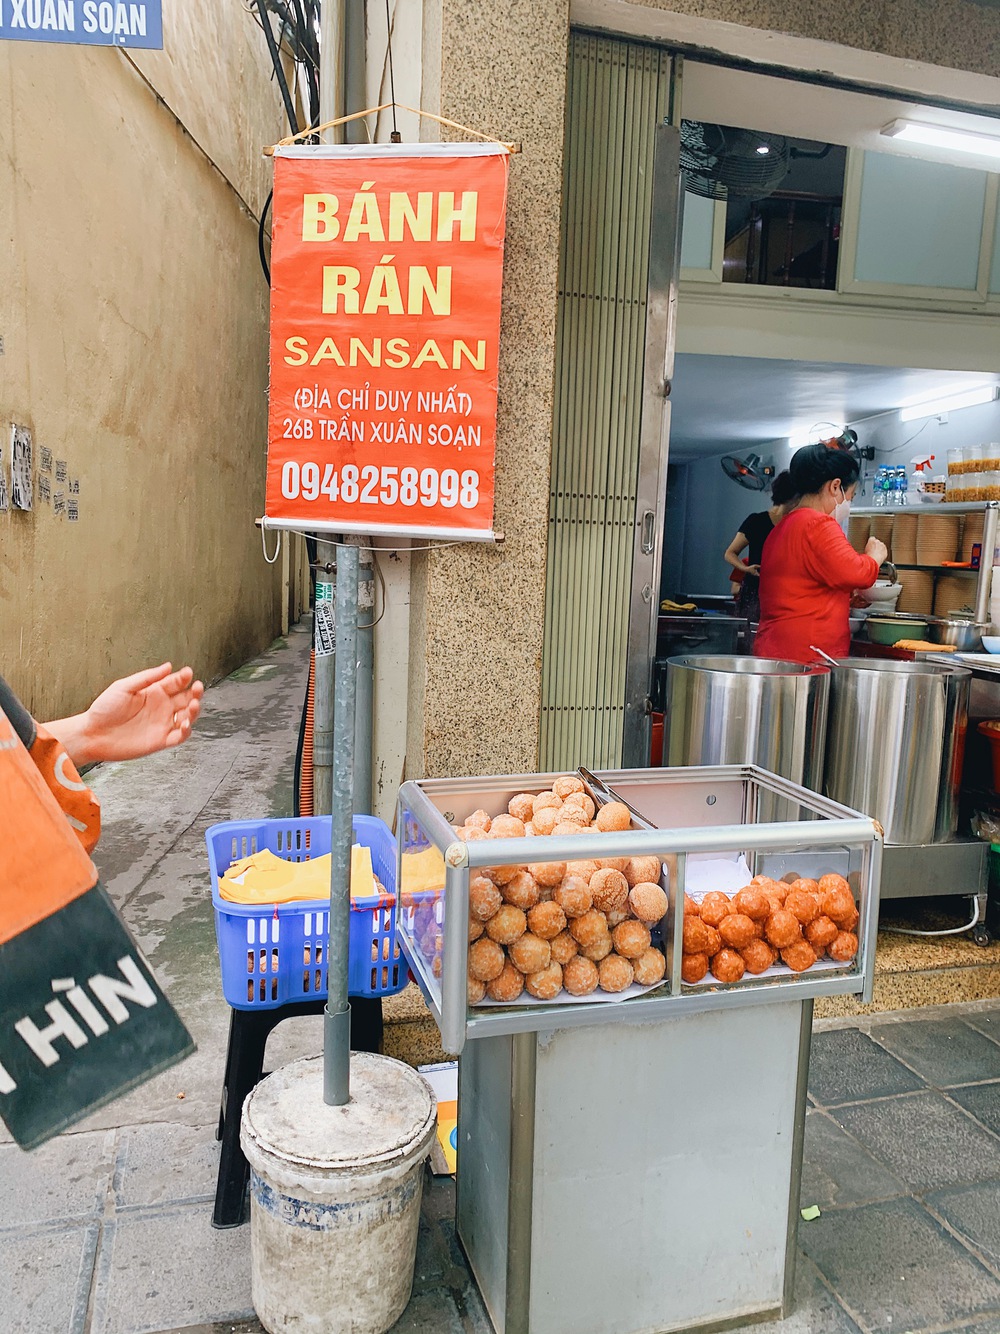 Rẽ vào 2 con phố trung tâm có toàn hàng ăn vặt nổi tiếng ở Hà Nội: Đi một vòng thôi là no cả ngày - Ảnh 9.